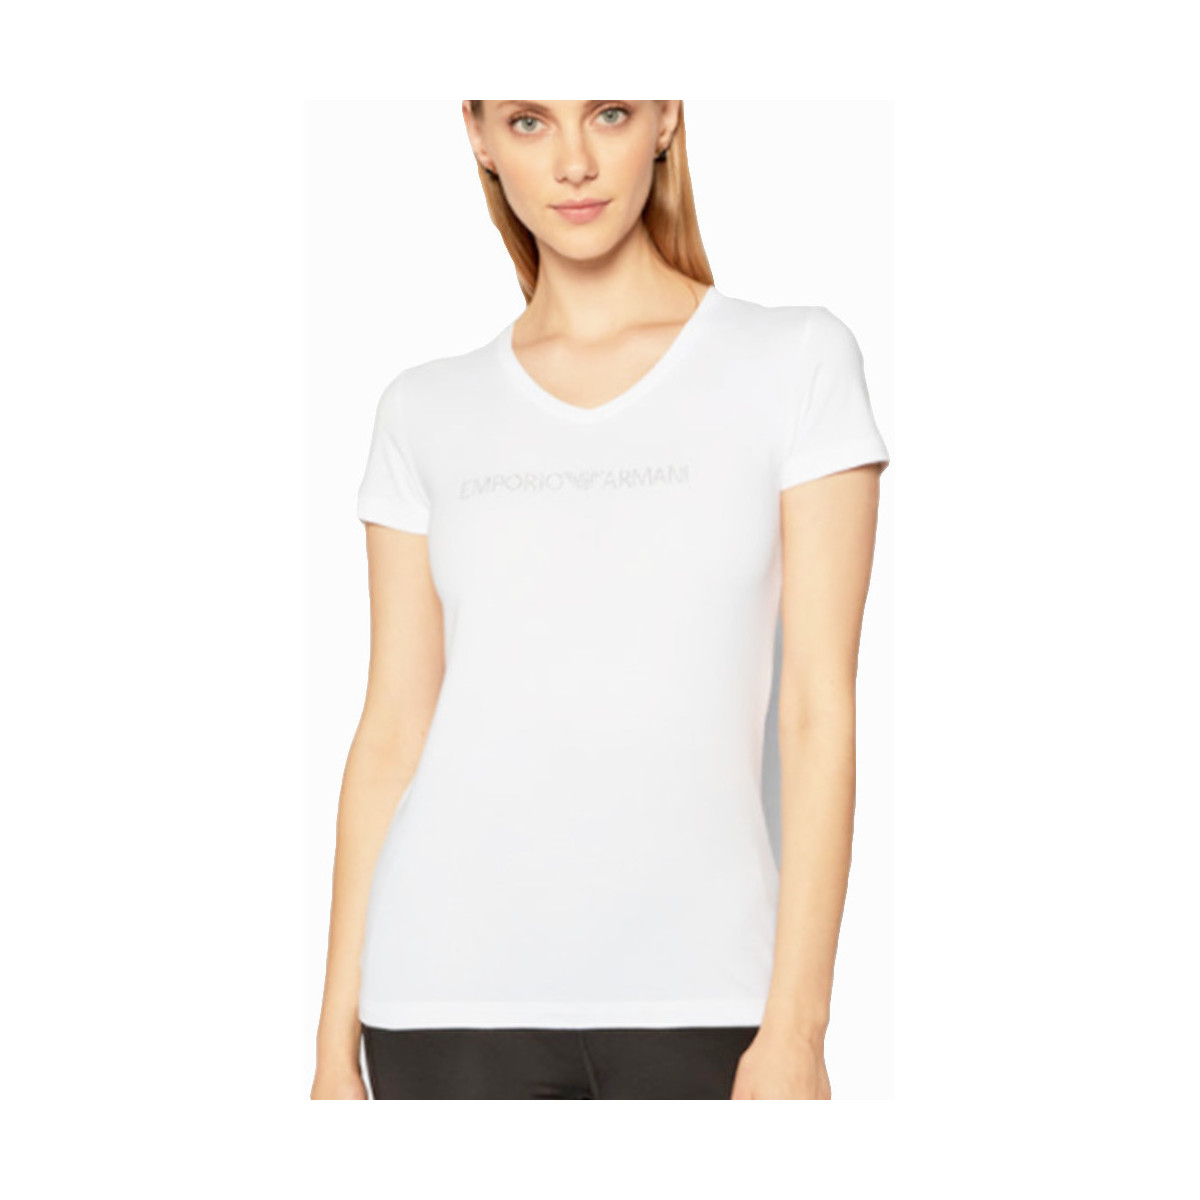 Abbigliamento Donna T-shirt maniche corte Emporio Armani Star logo Bianco